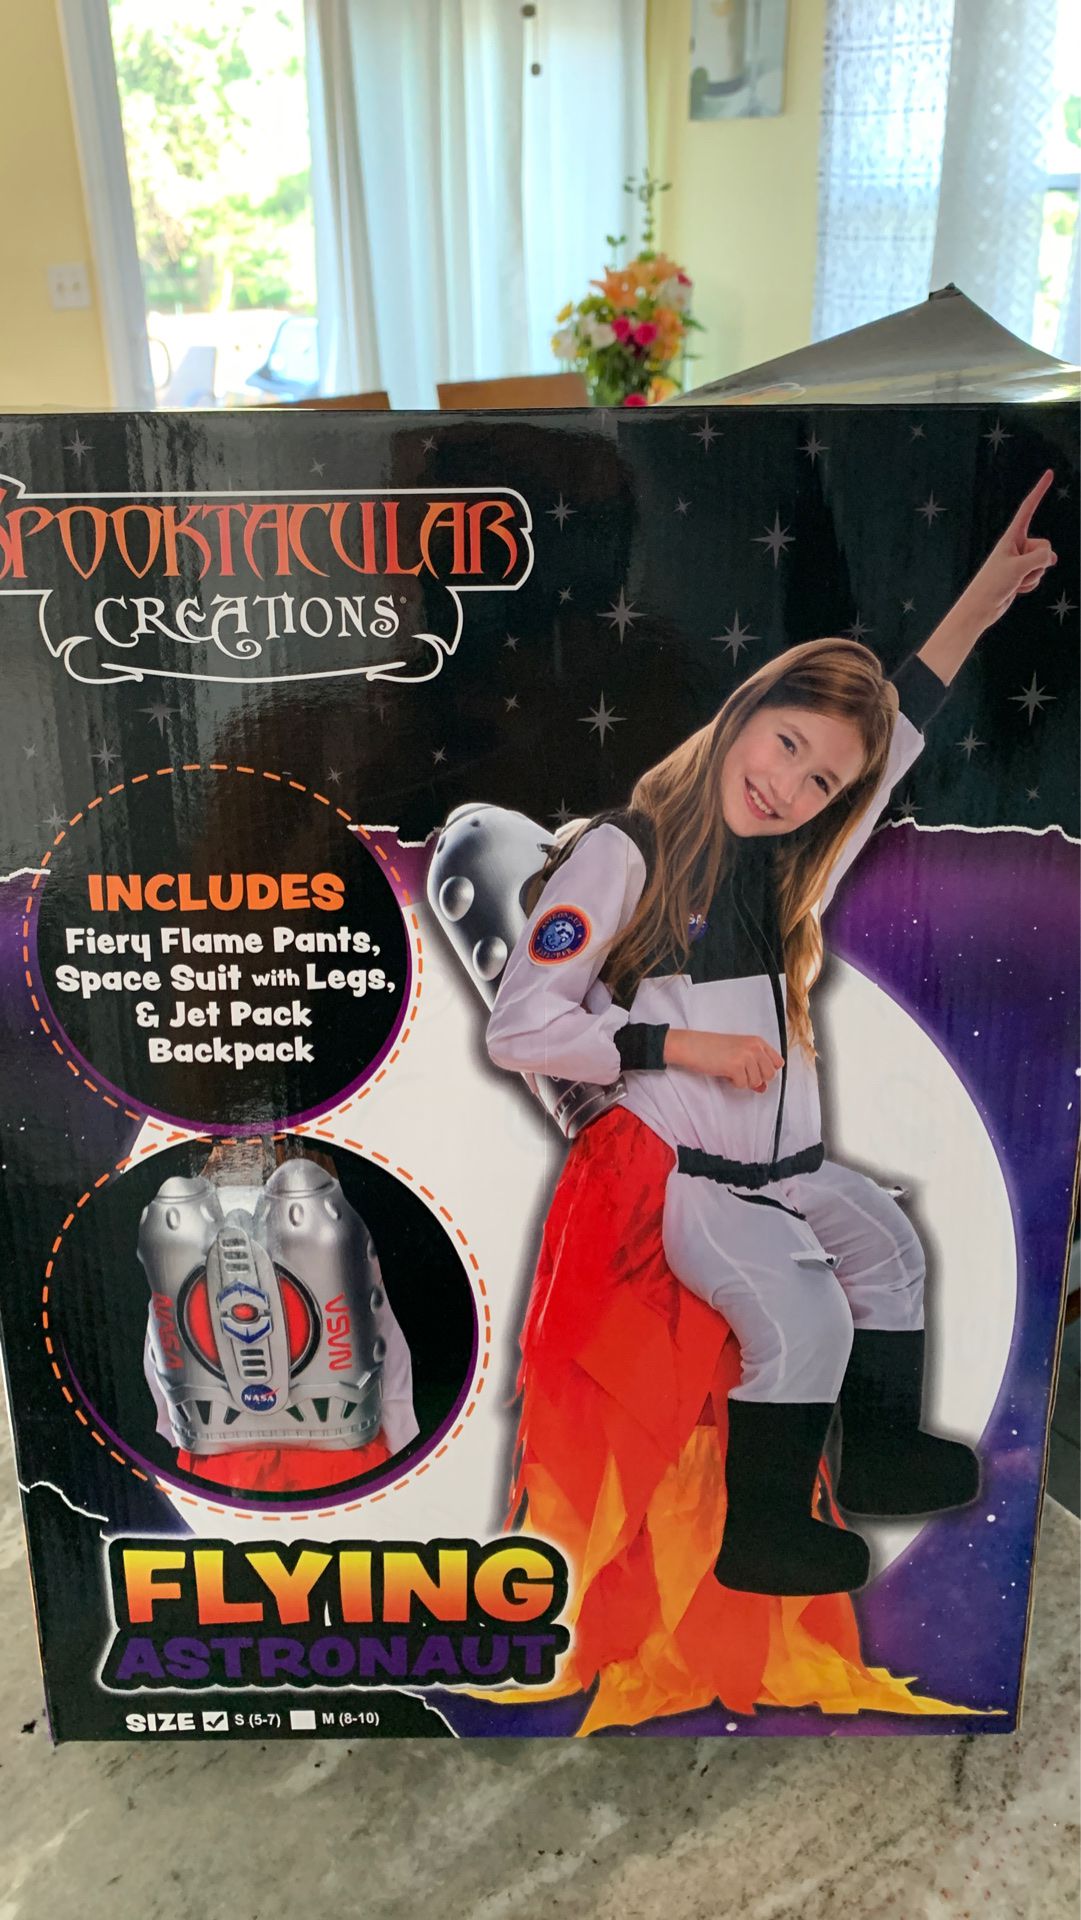 Flying Astronaut costume